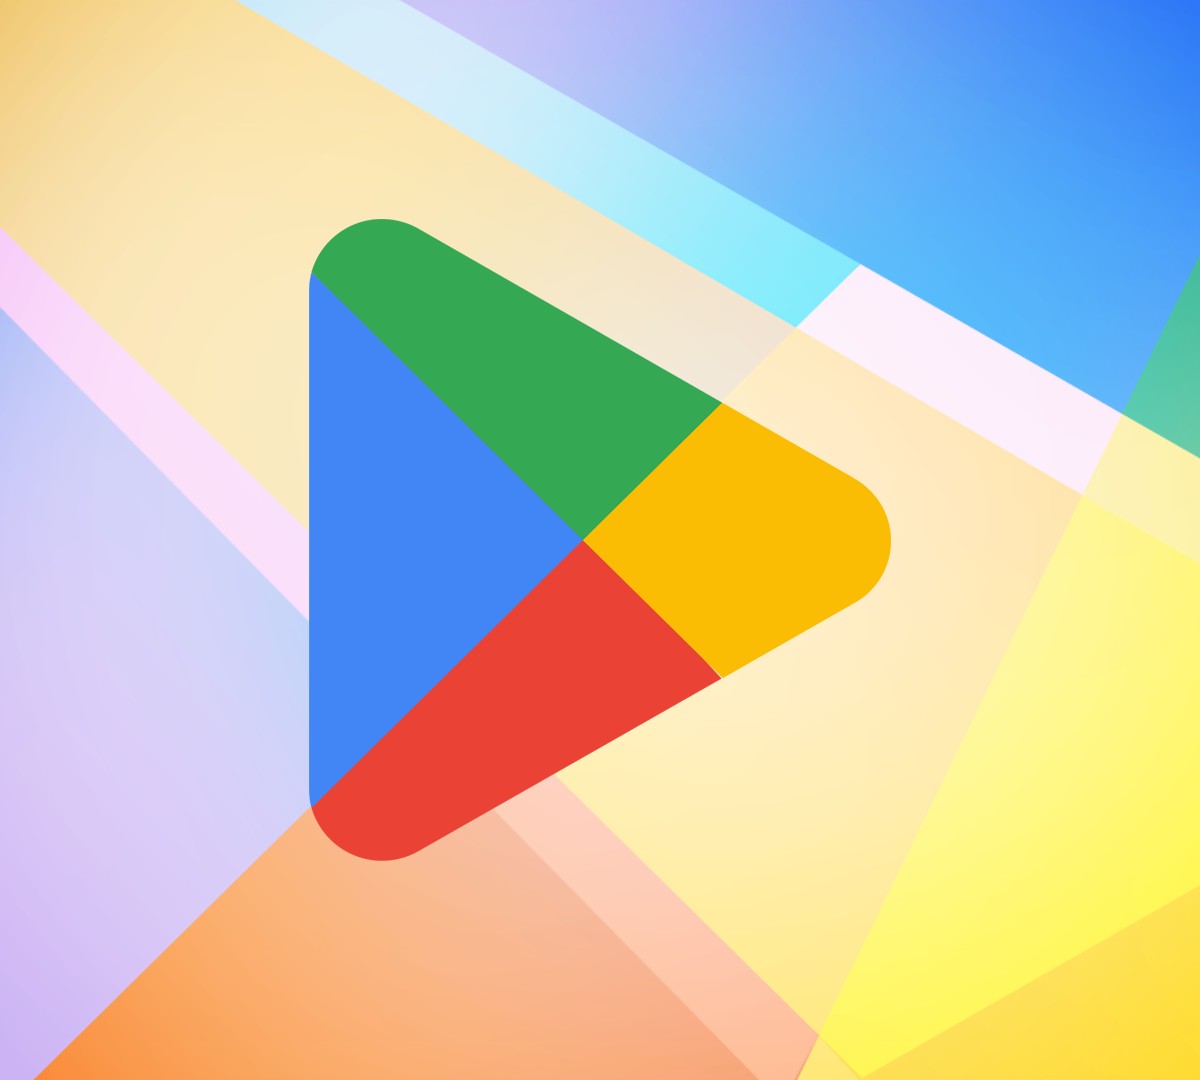 Google Play Store se rende ao Material Design e traz mais novidades -  Softonic